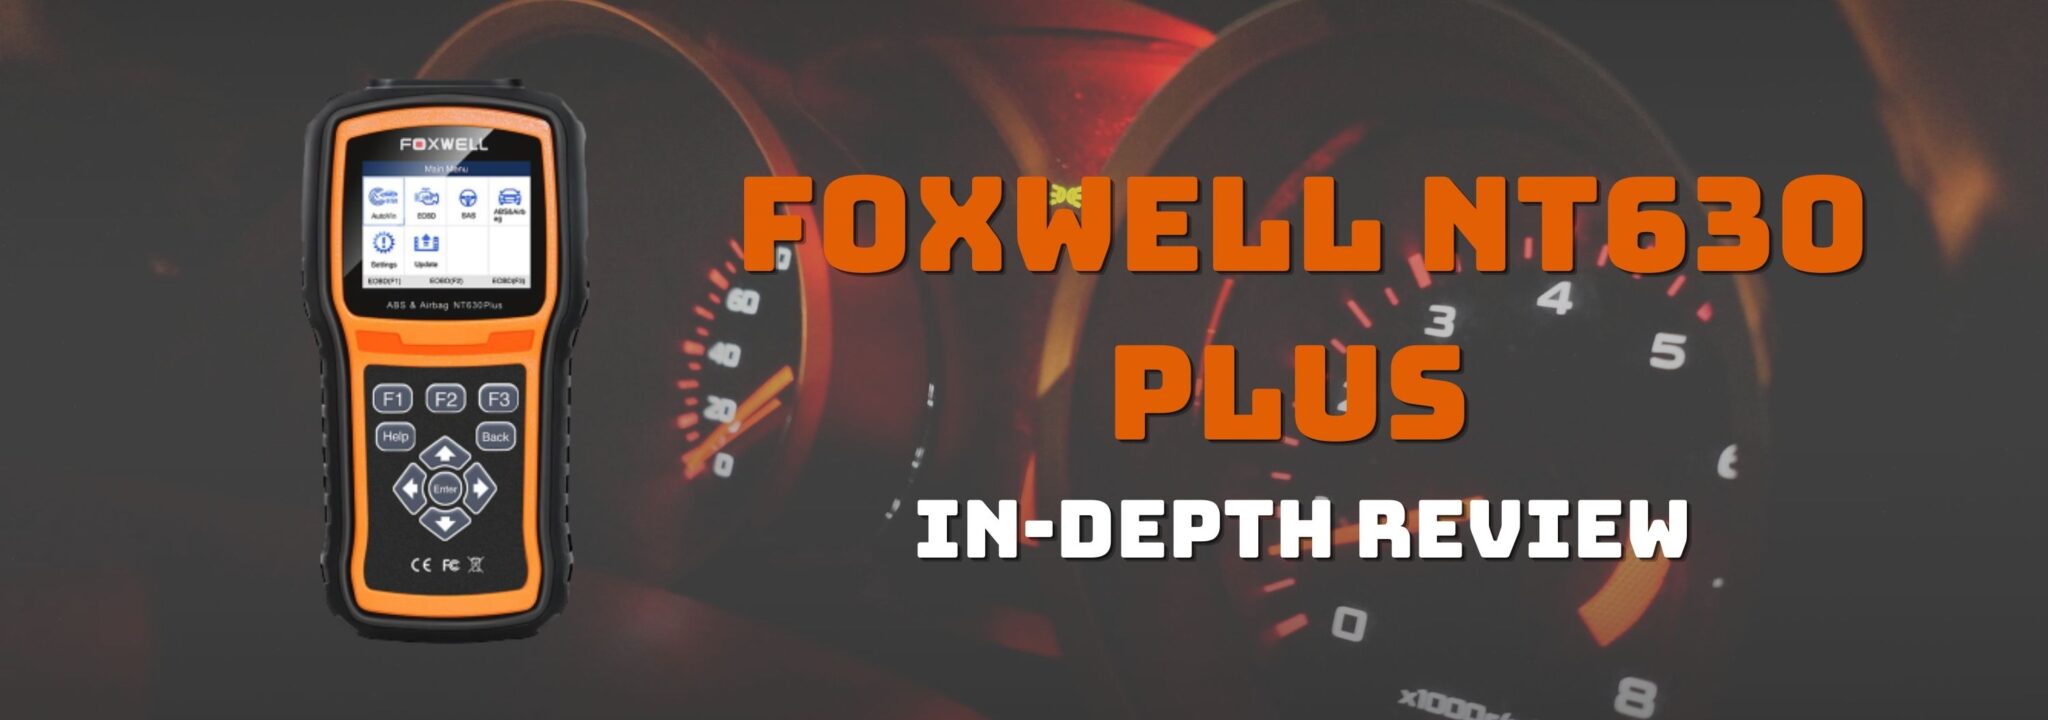 foxwell 630 plus